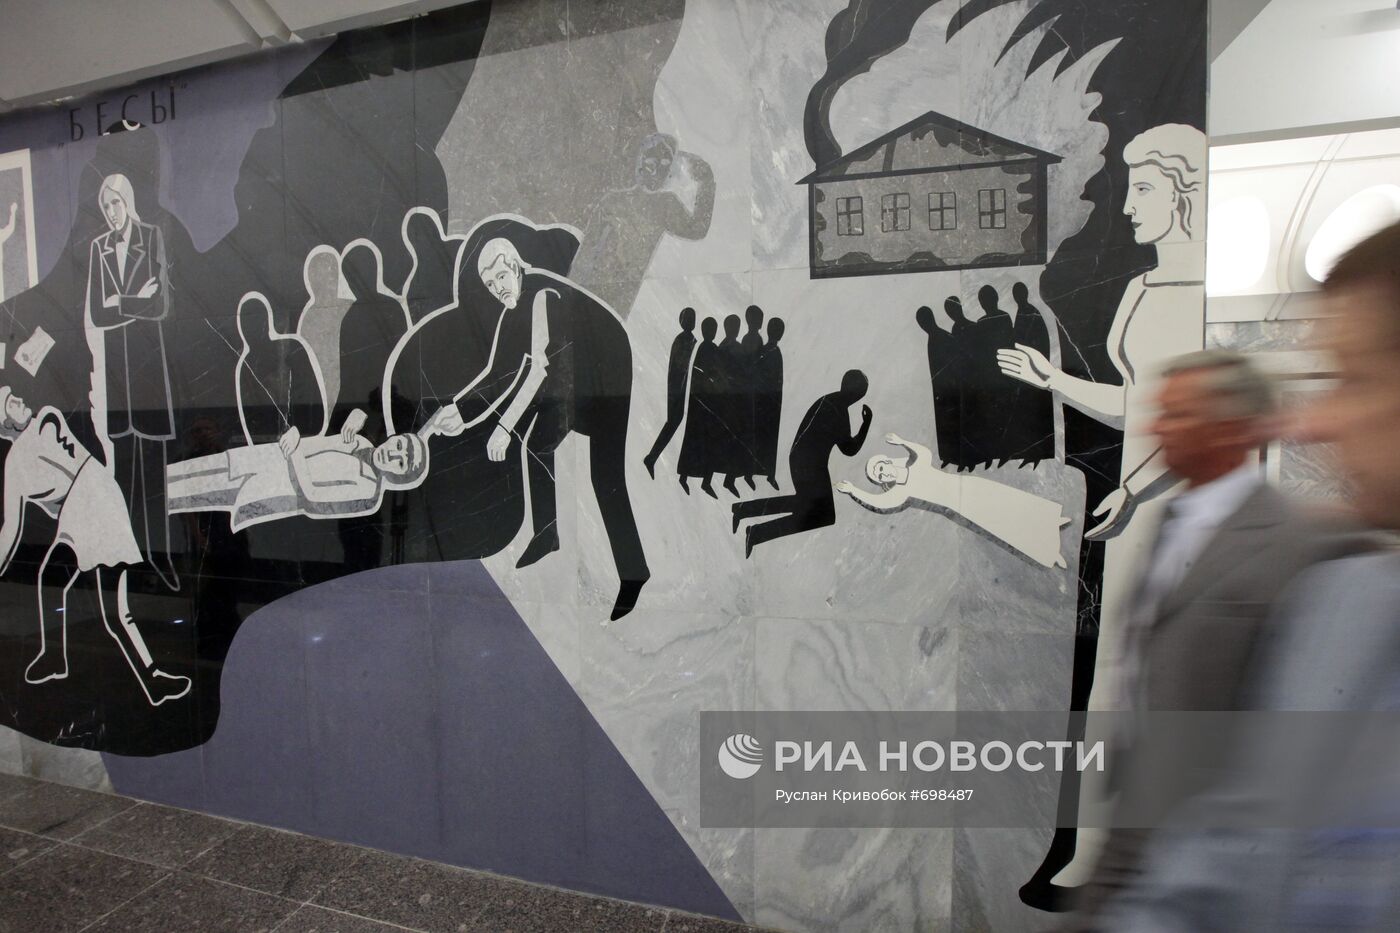 Вестибюль станции метро "Достоевская"